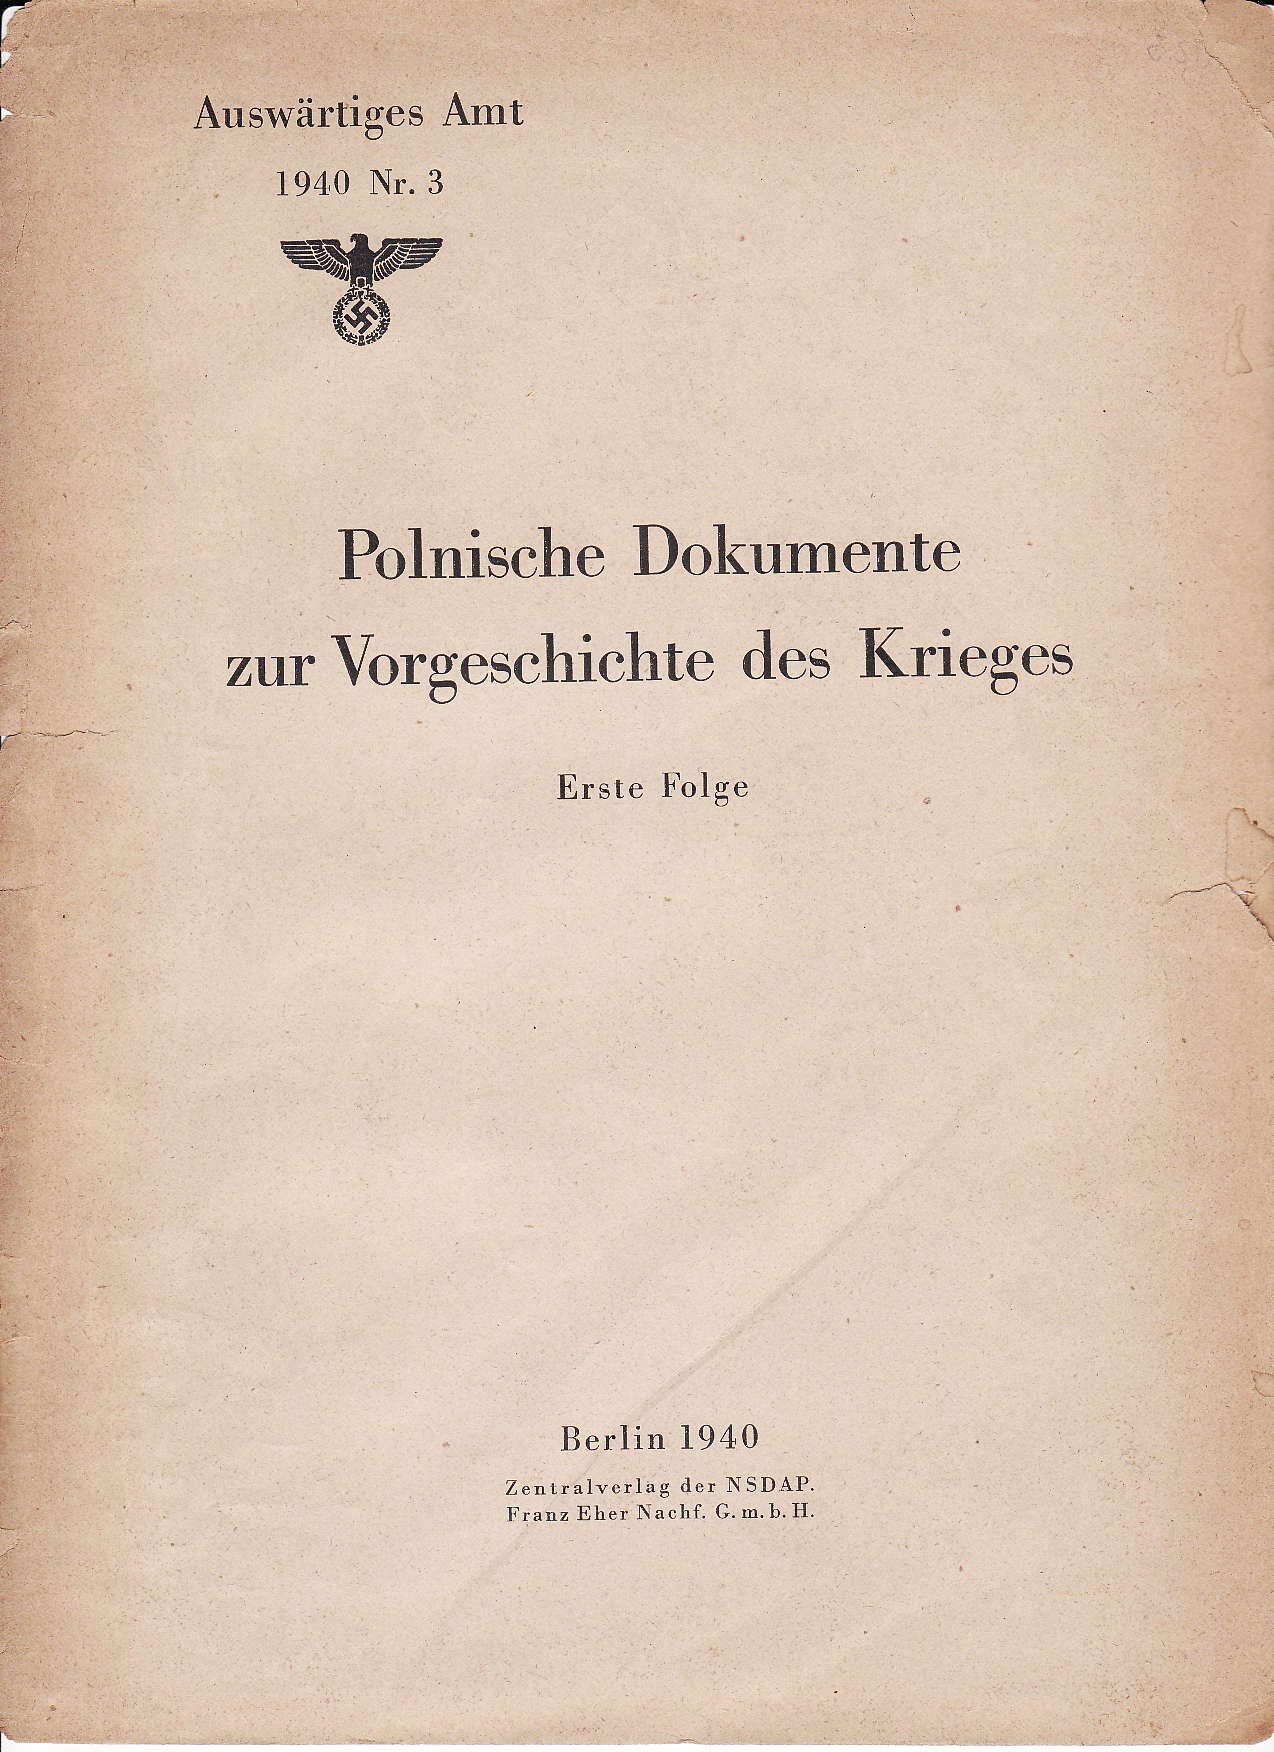 Weissbuch Nr. 3 - Polnische Dokumente zur Vorgeschichte des Krieges (1940, 128 S., Scan)